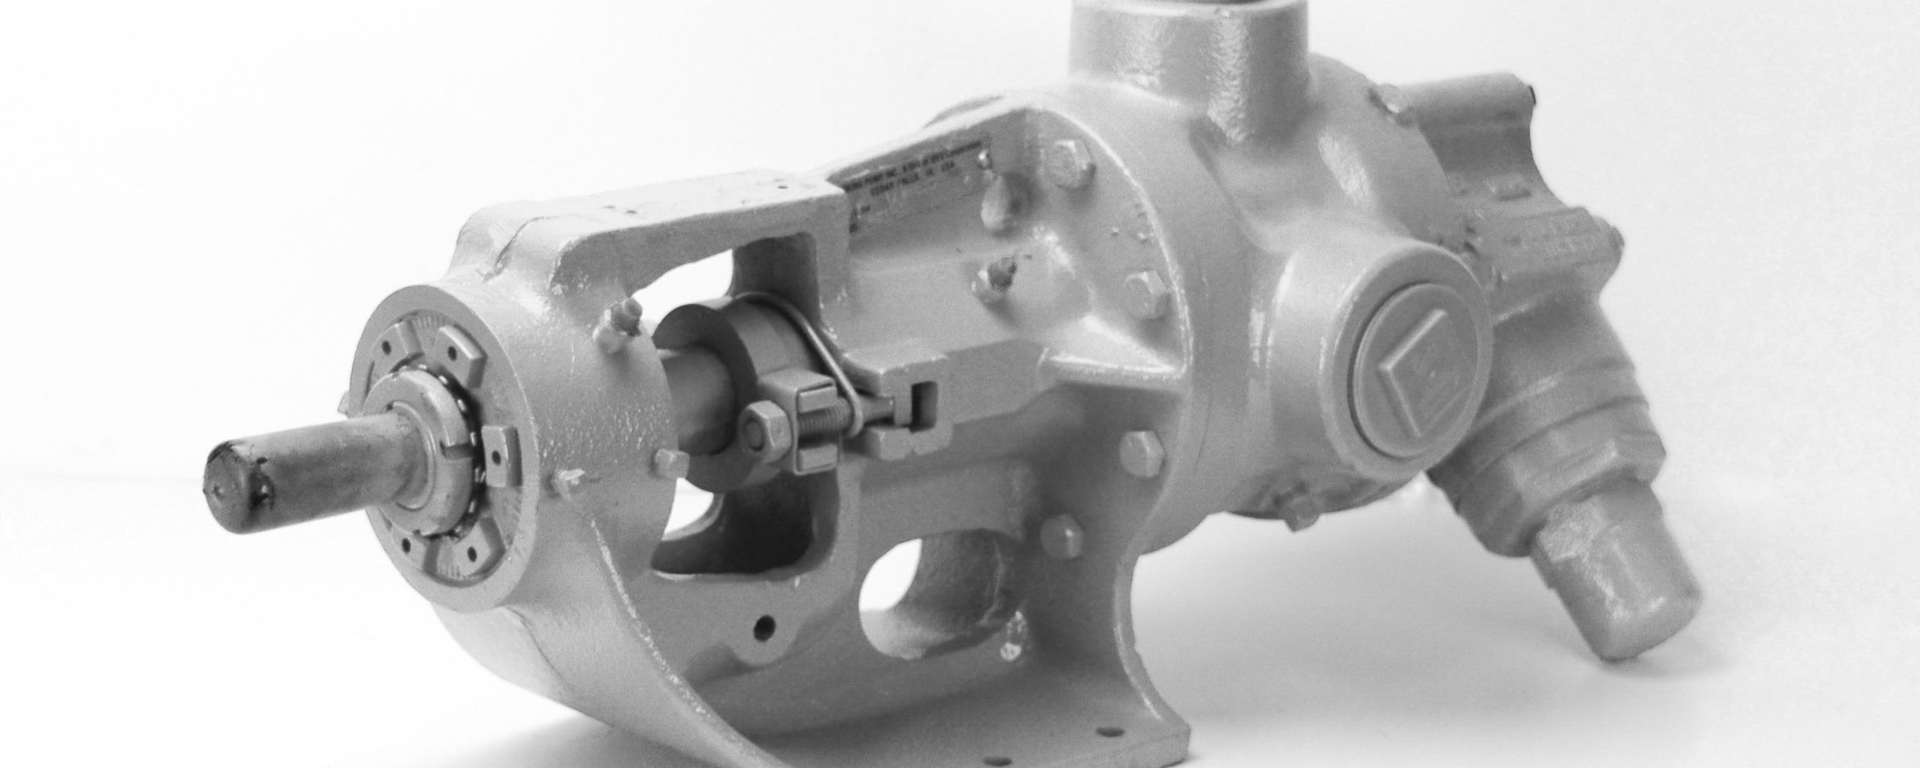 工业泵 - 非标轴承-英制轴承-定做轴承